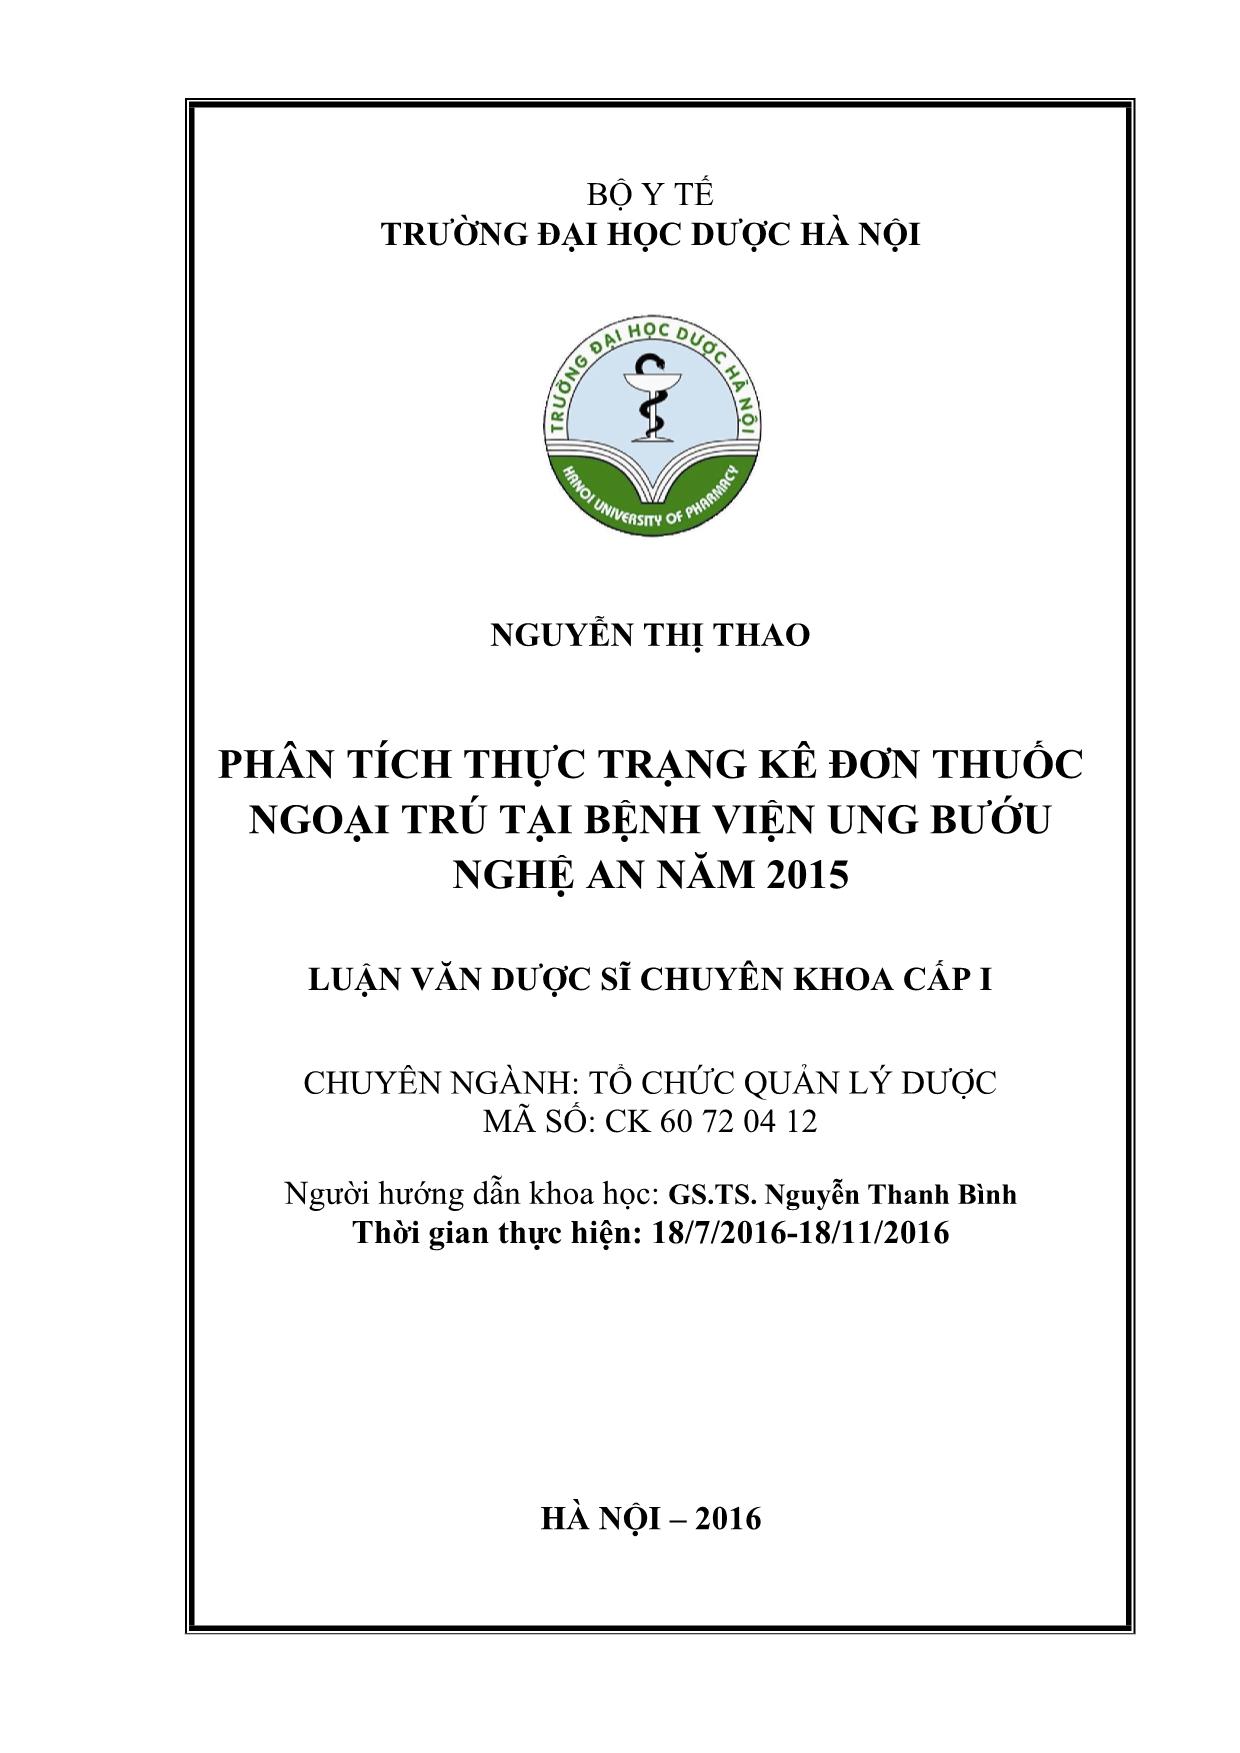 Luận án Phân tích thực trạng kê đơn thuốc ngoại trú tại bệnh viện ung bướu Nghệ an năm 2015 trang 2